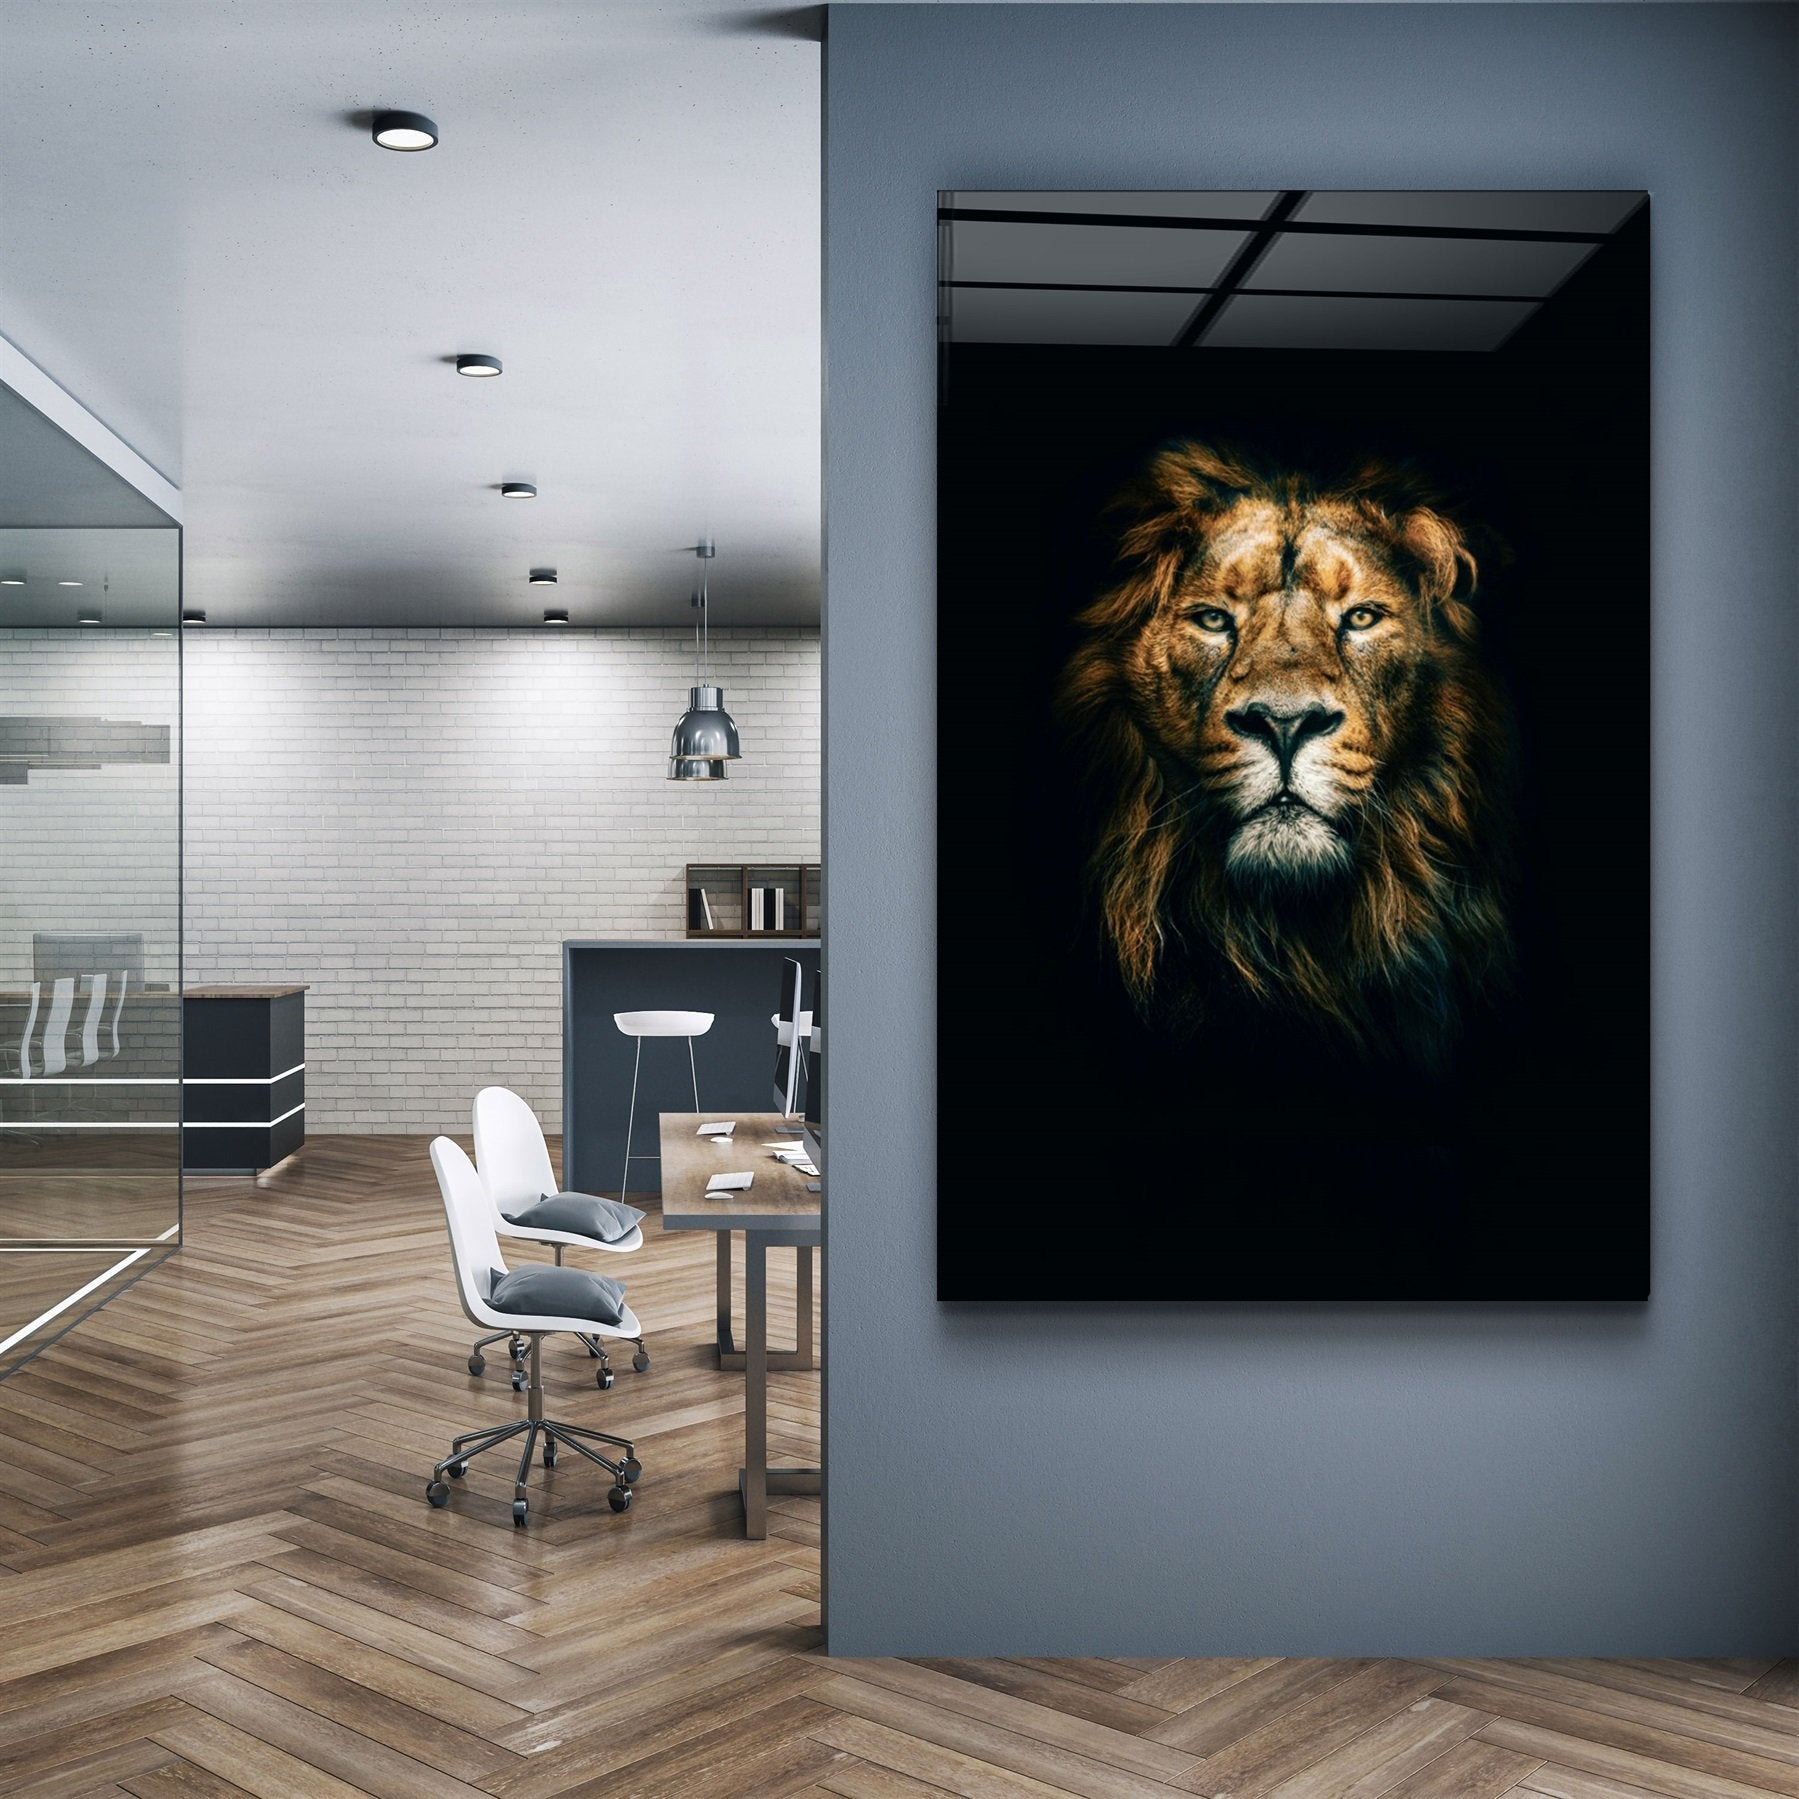 ・"Wild Lion"・Glass Wall Art